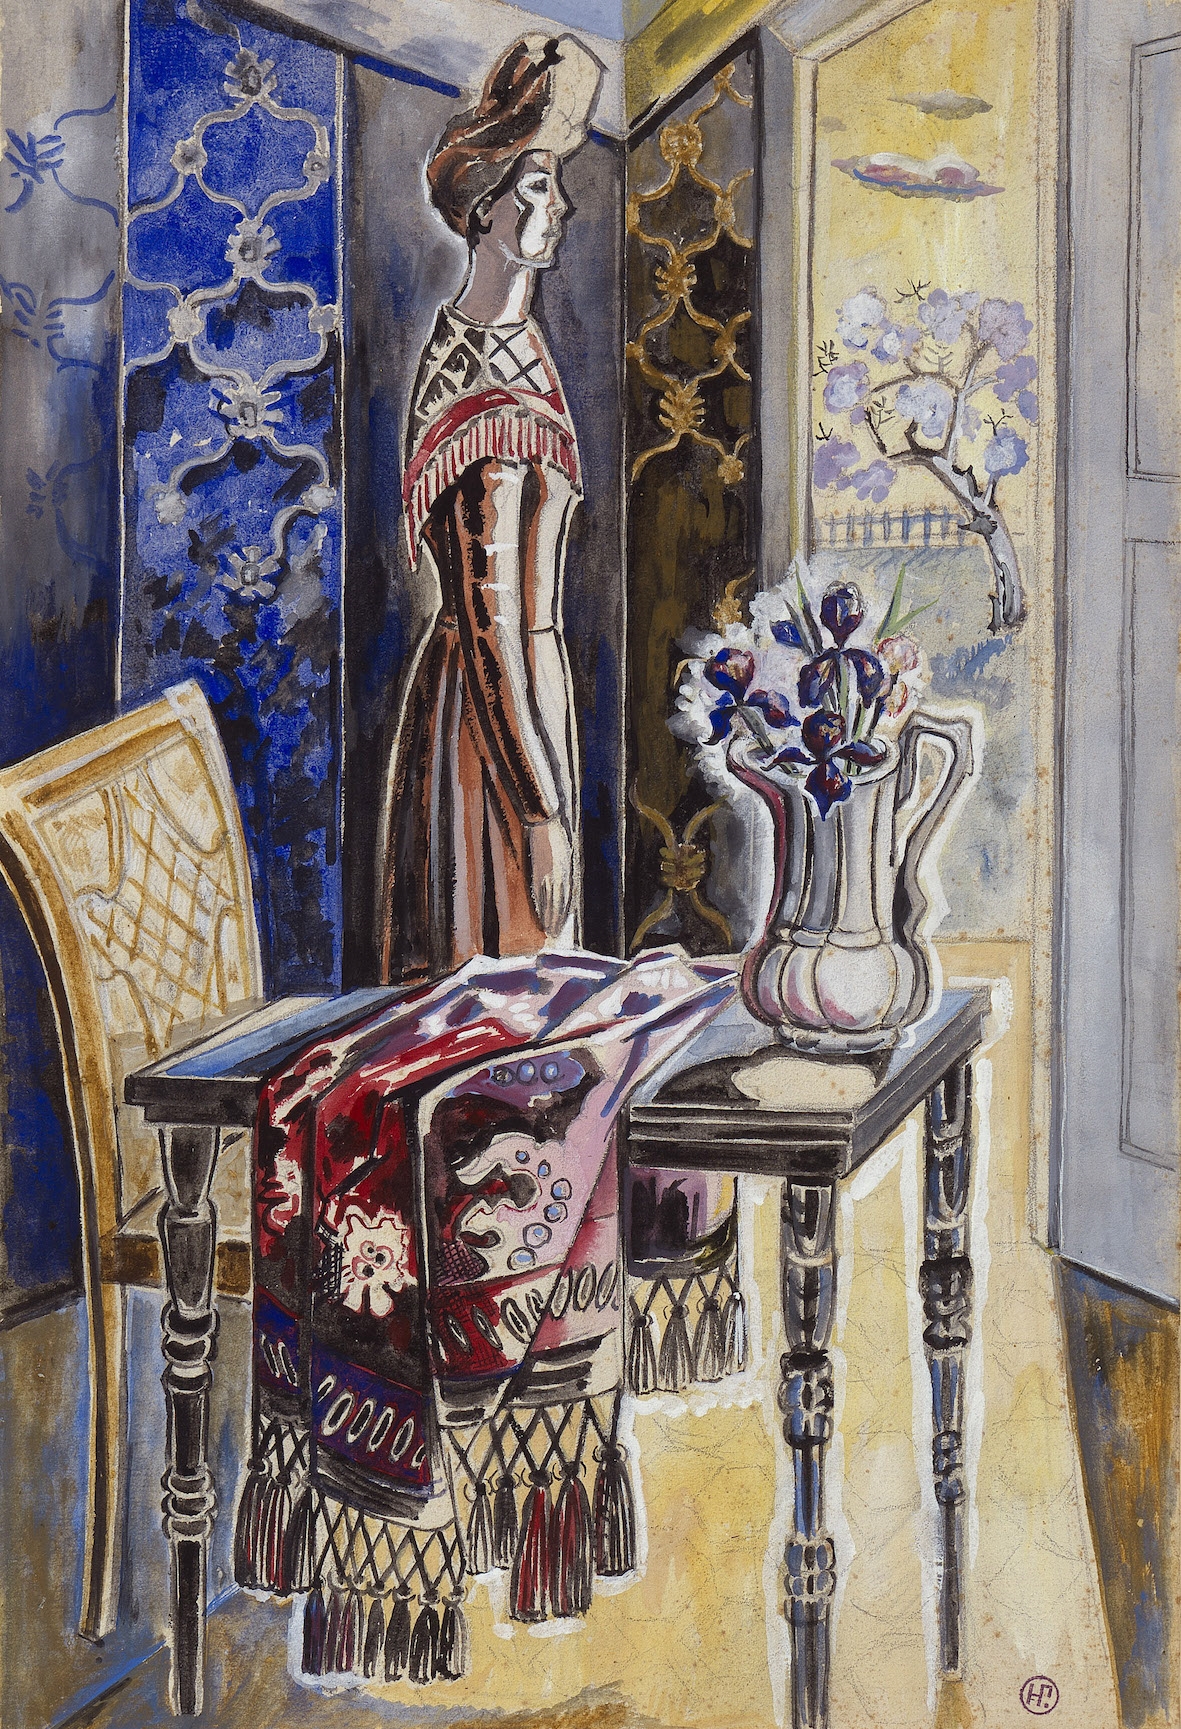 Artwork by Natalia Goncharova, Femme dans un intérieur, Made of Pencil, watercolour and gouache on paper